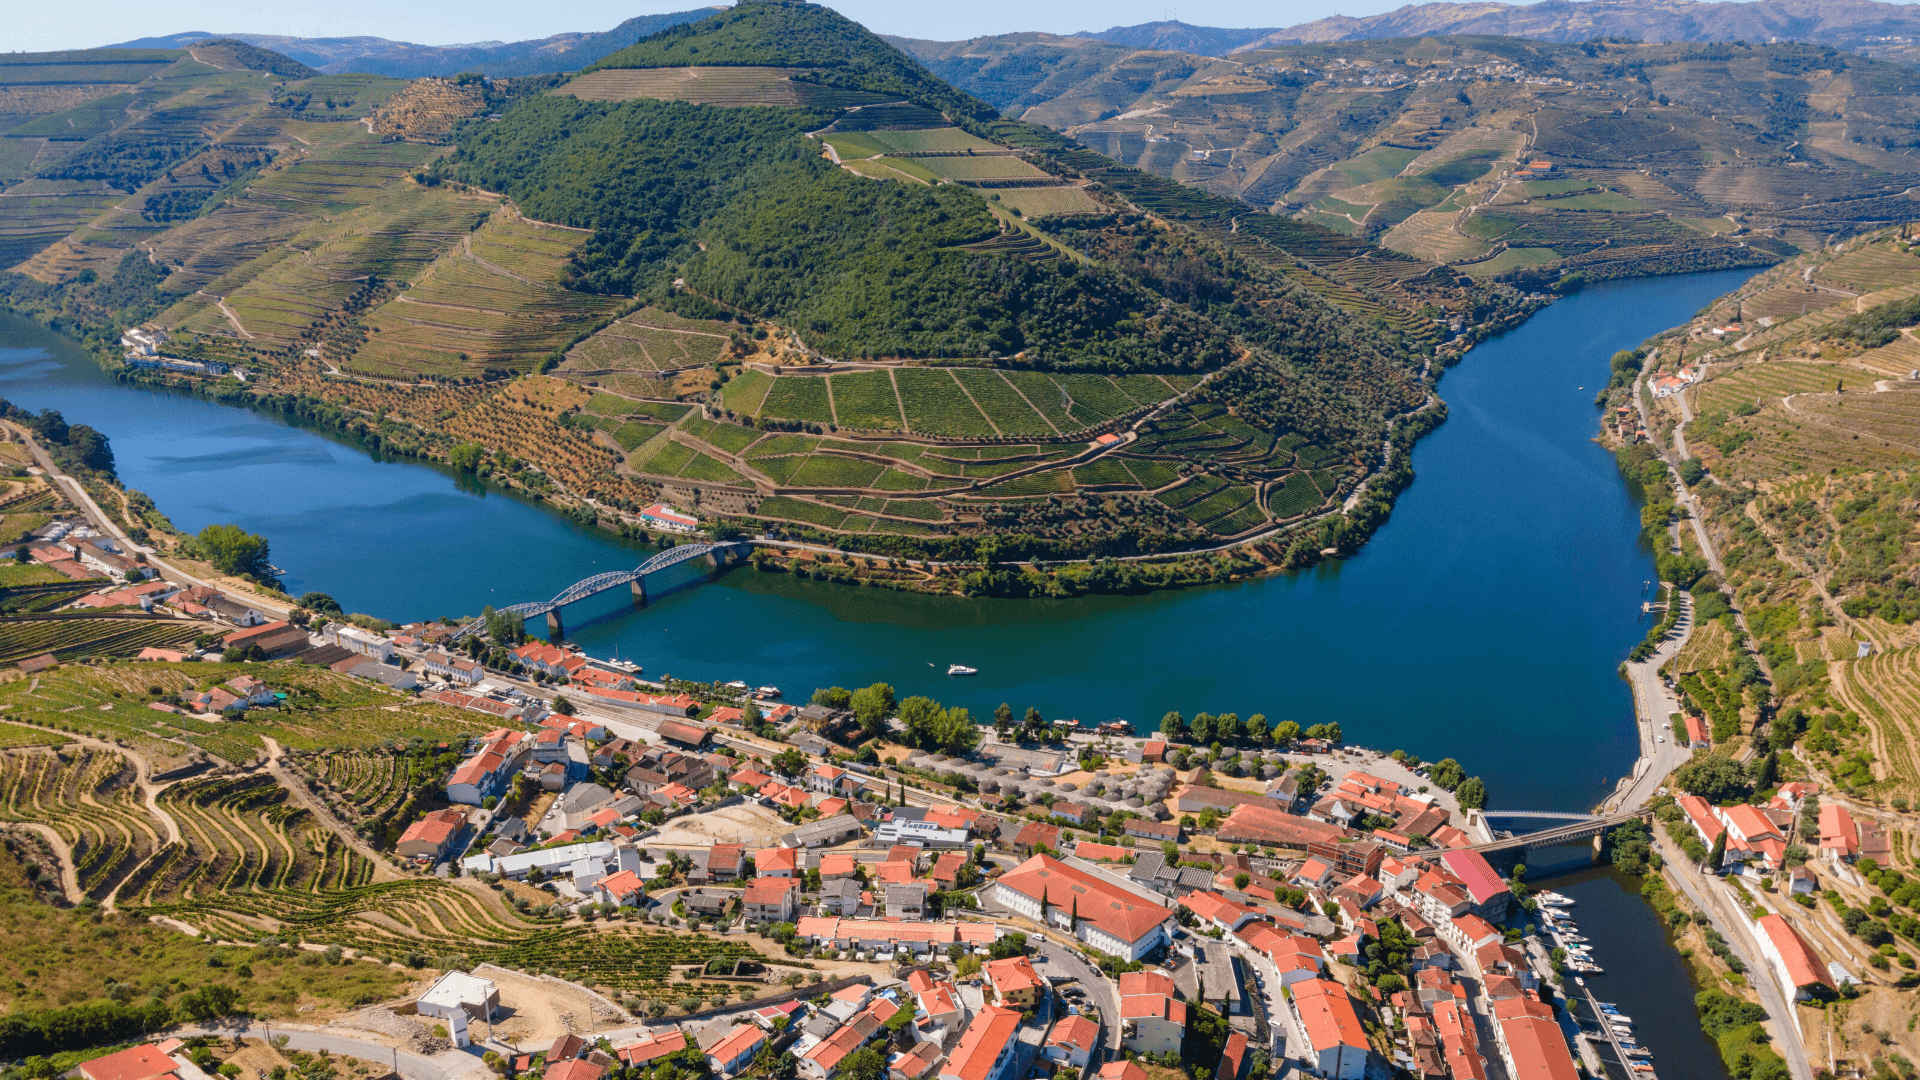 Pinhão, a beautiful village in the Douro Region